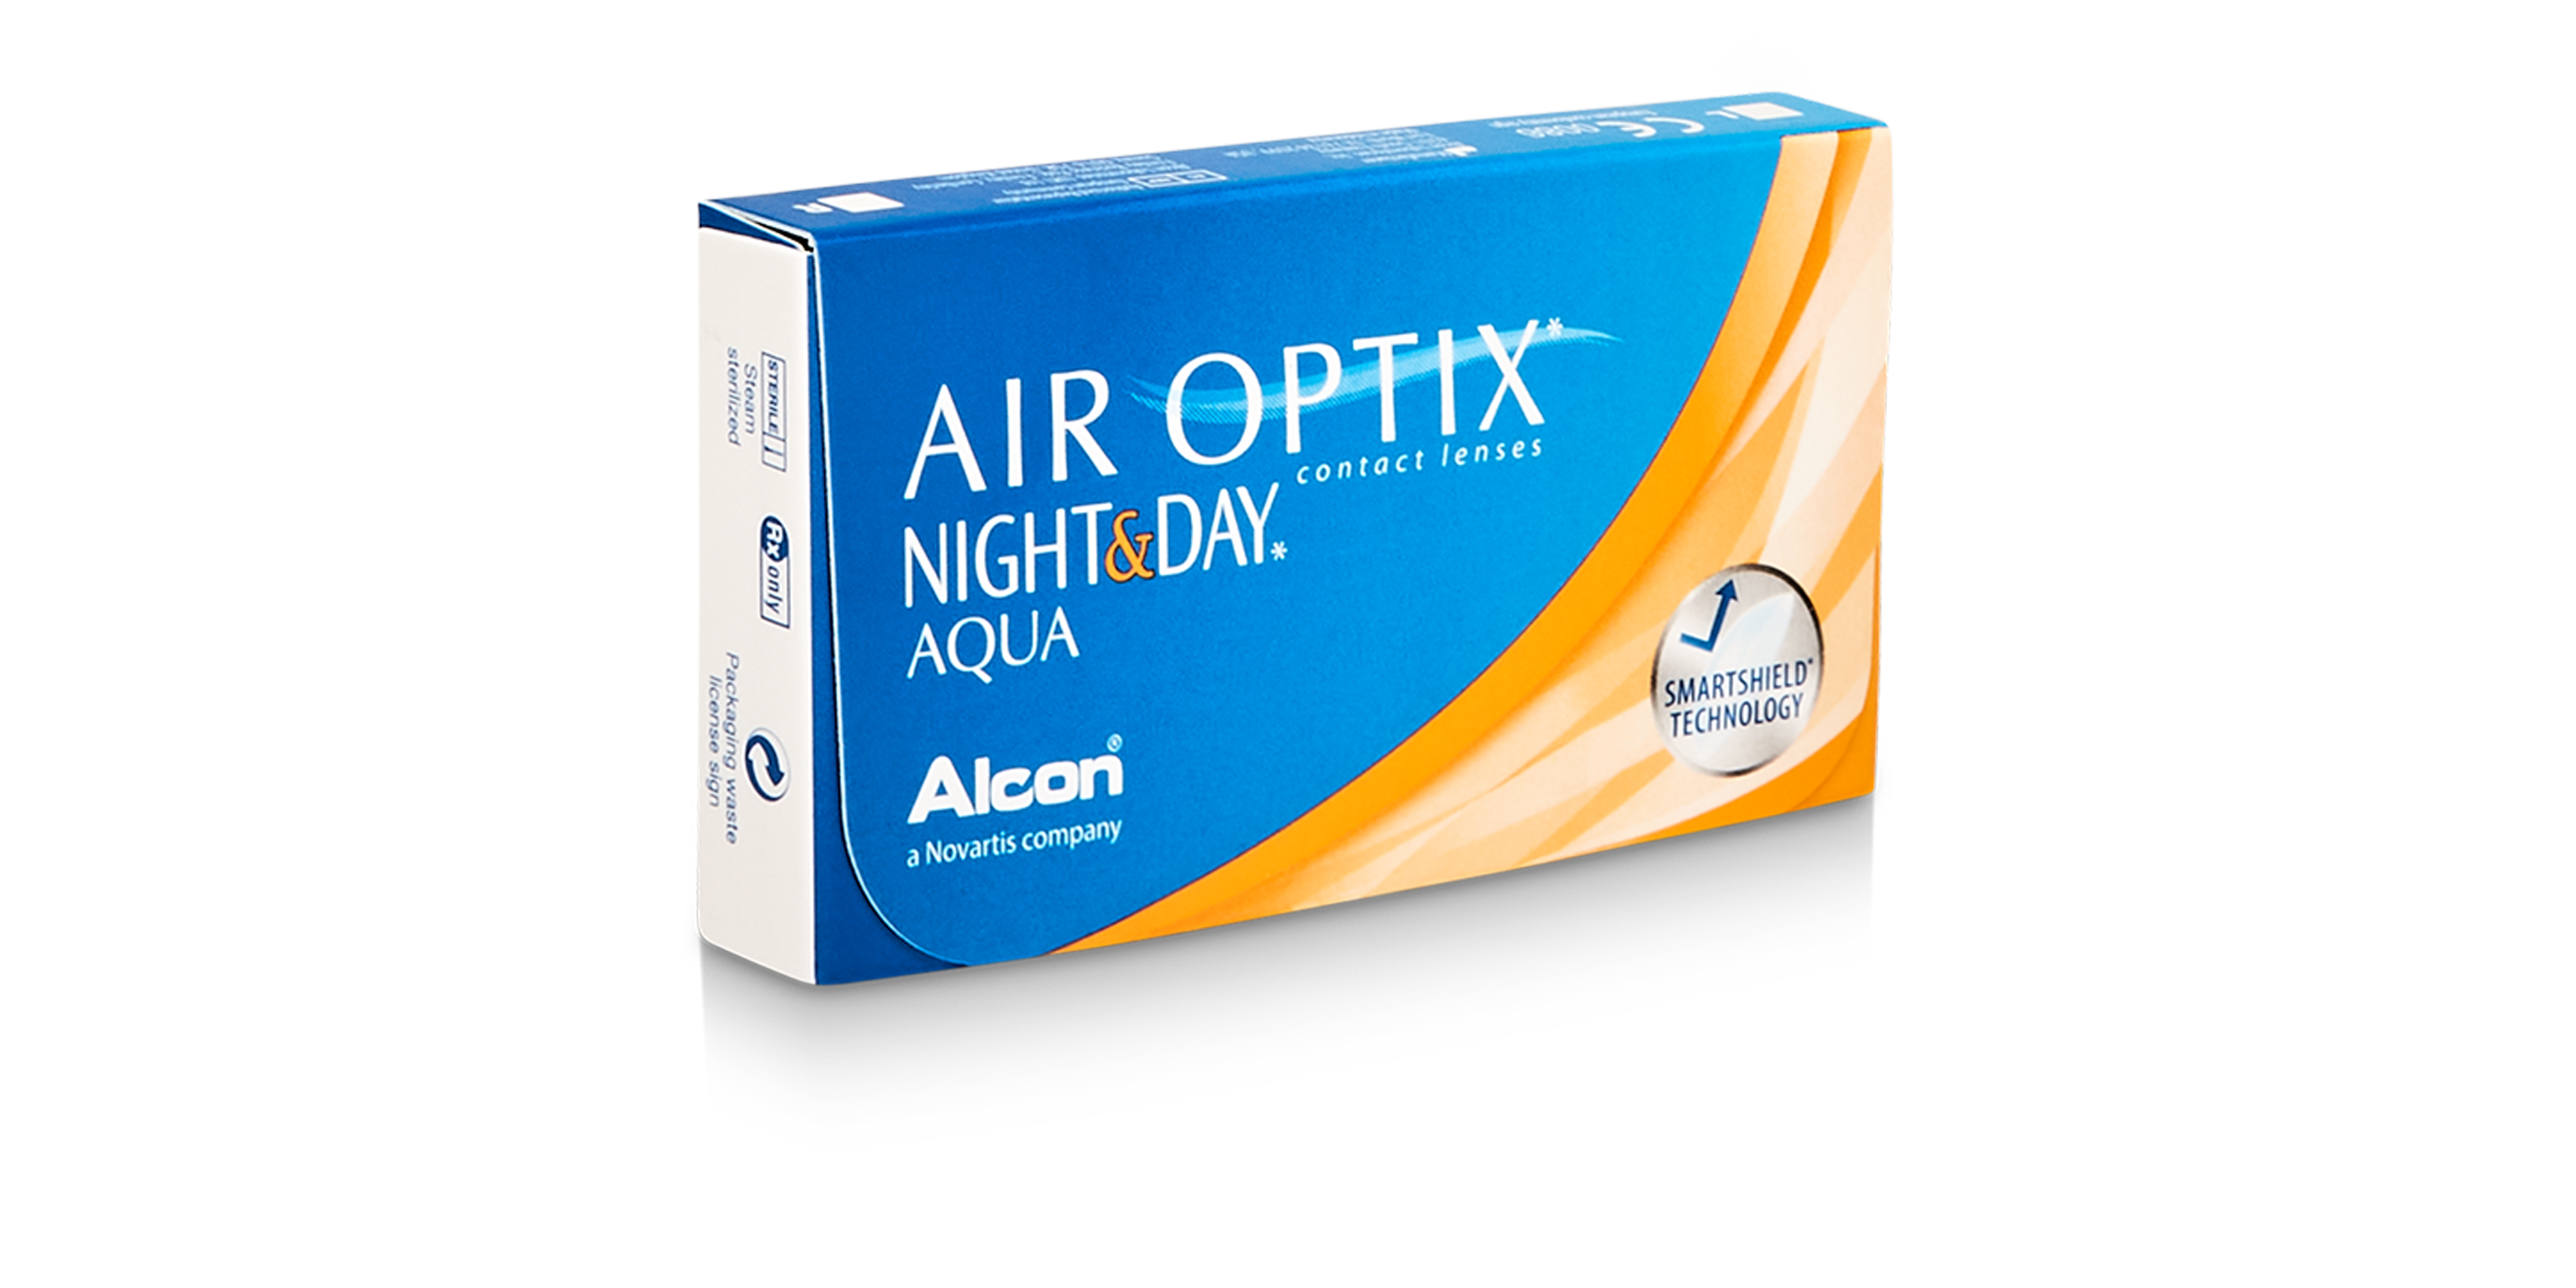 Air Optix Night & Day Aqua, 6 pack contact lenses